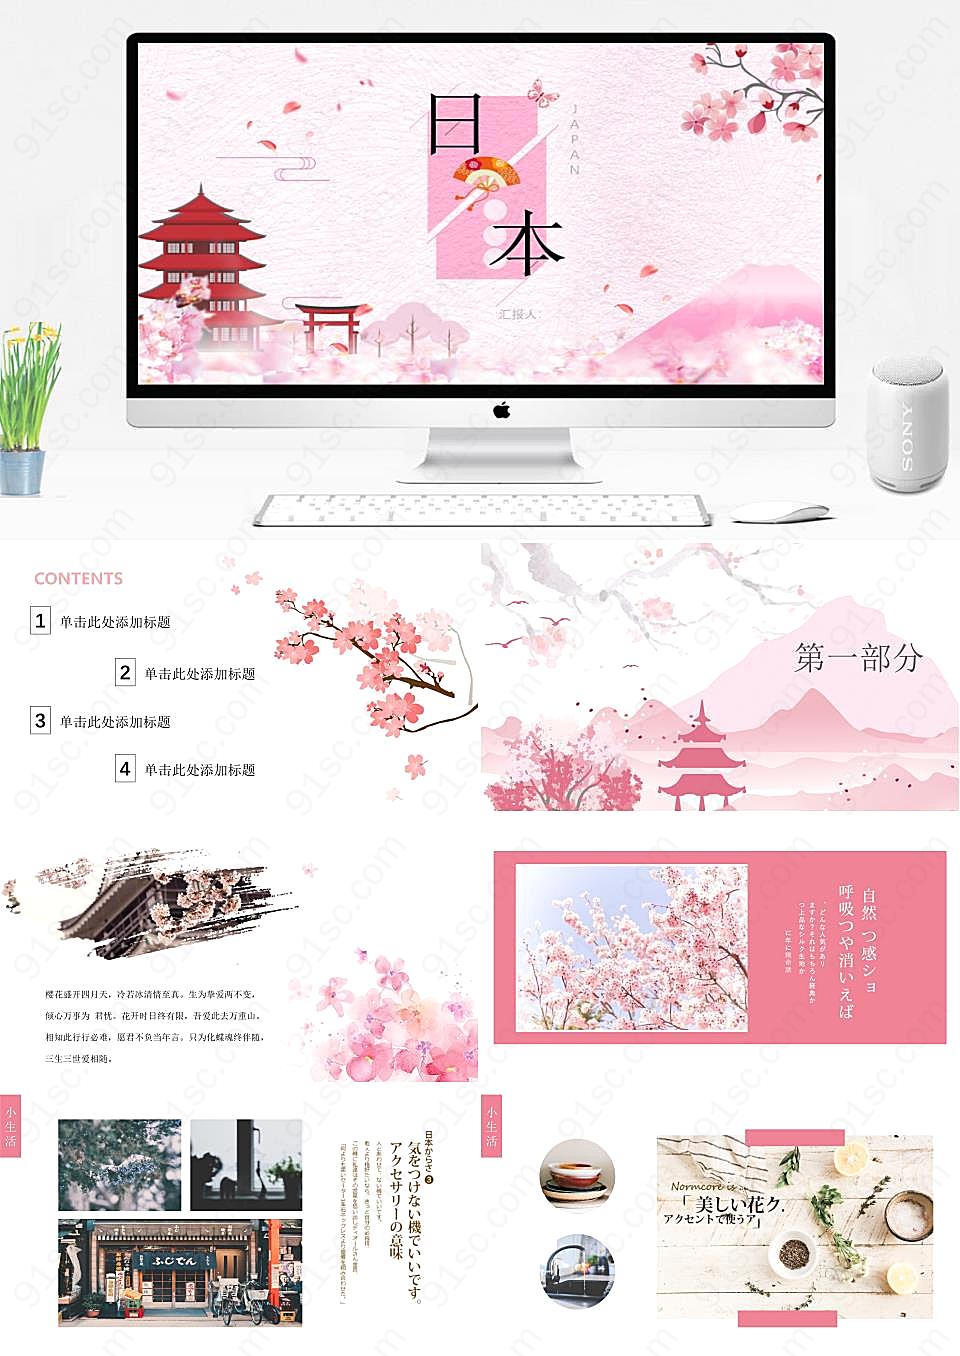 日本旅游文化粉色樱花季节探索PPT模板旅游旅行下载